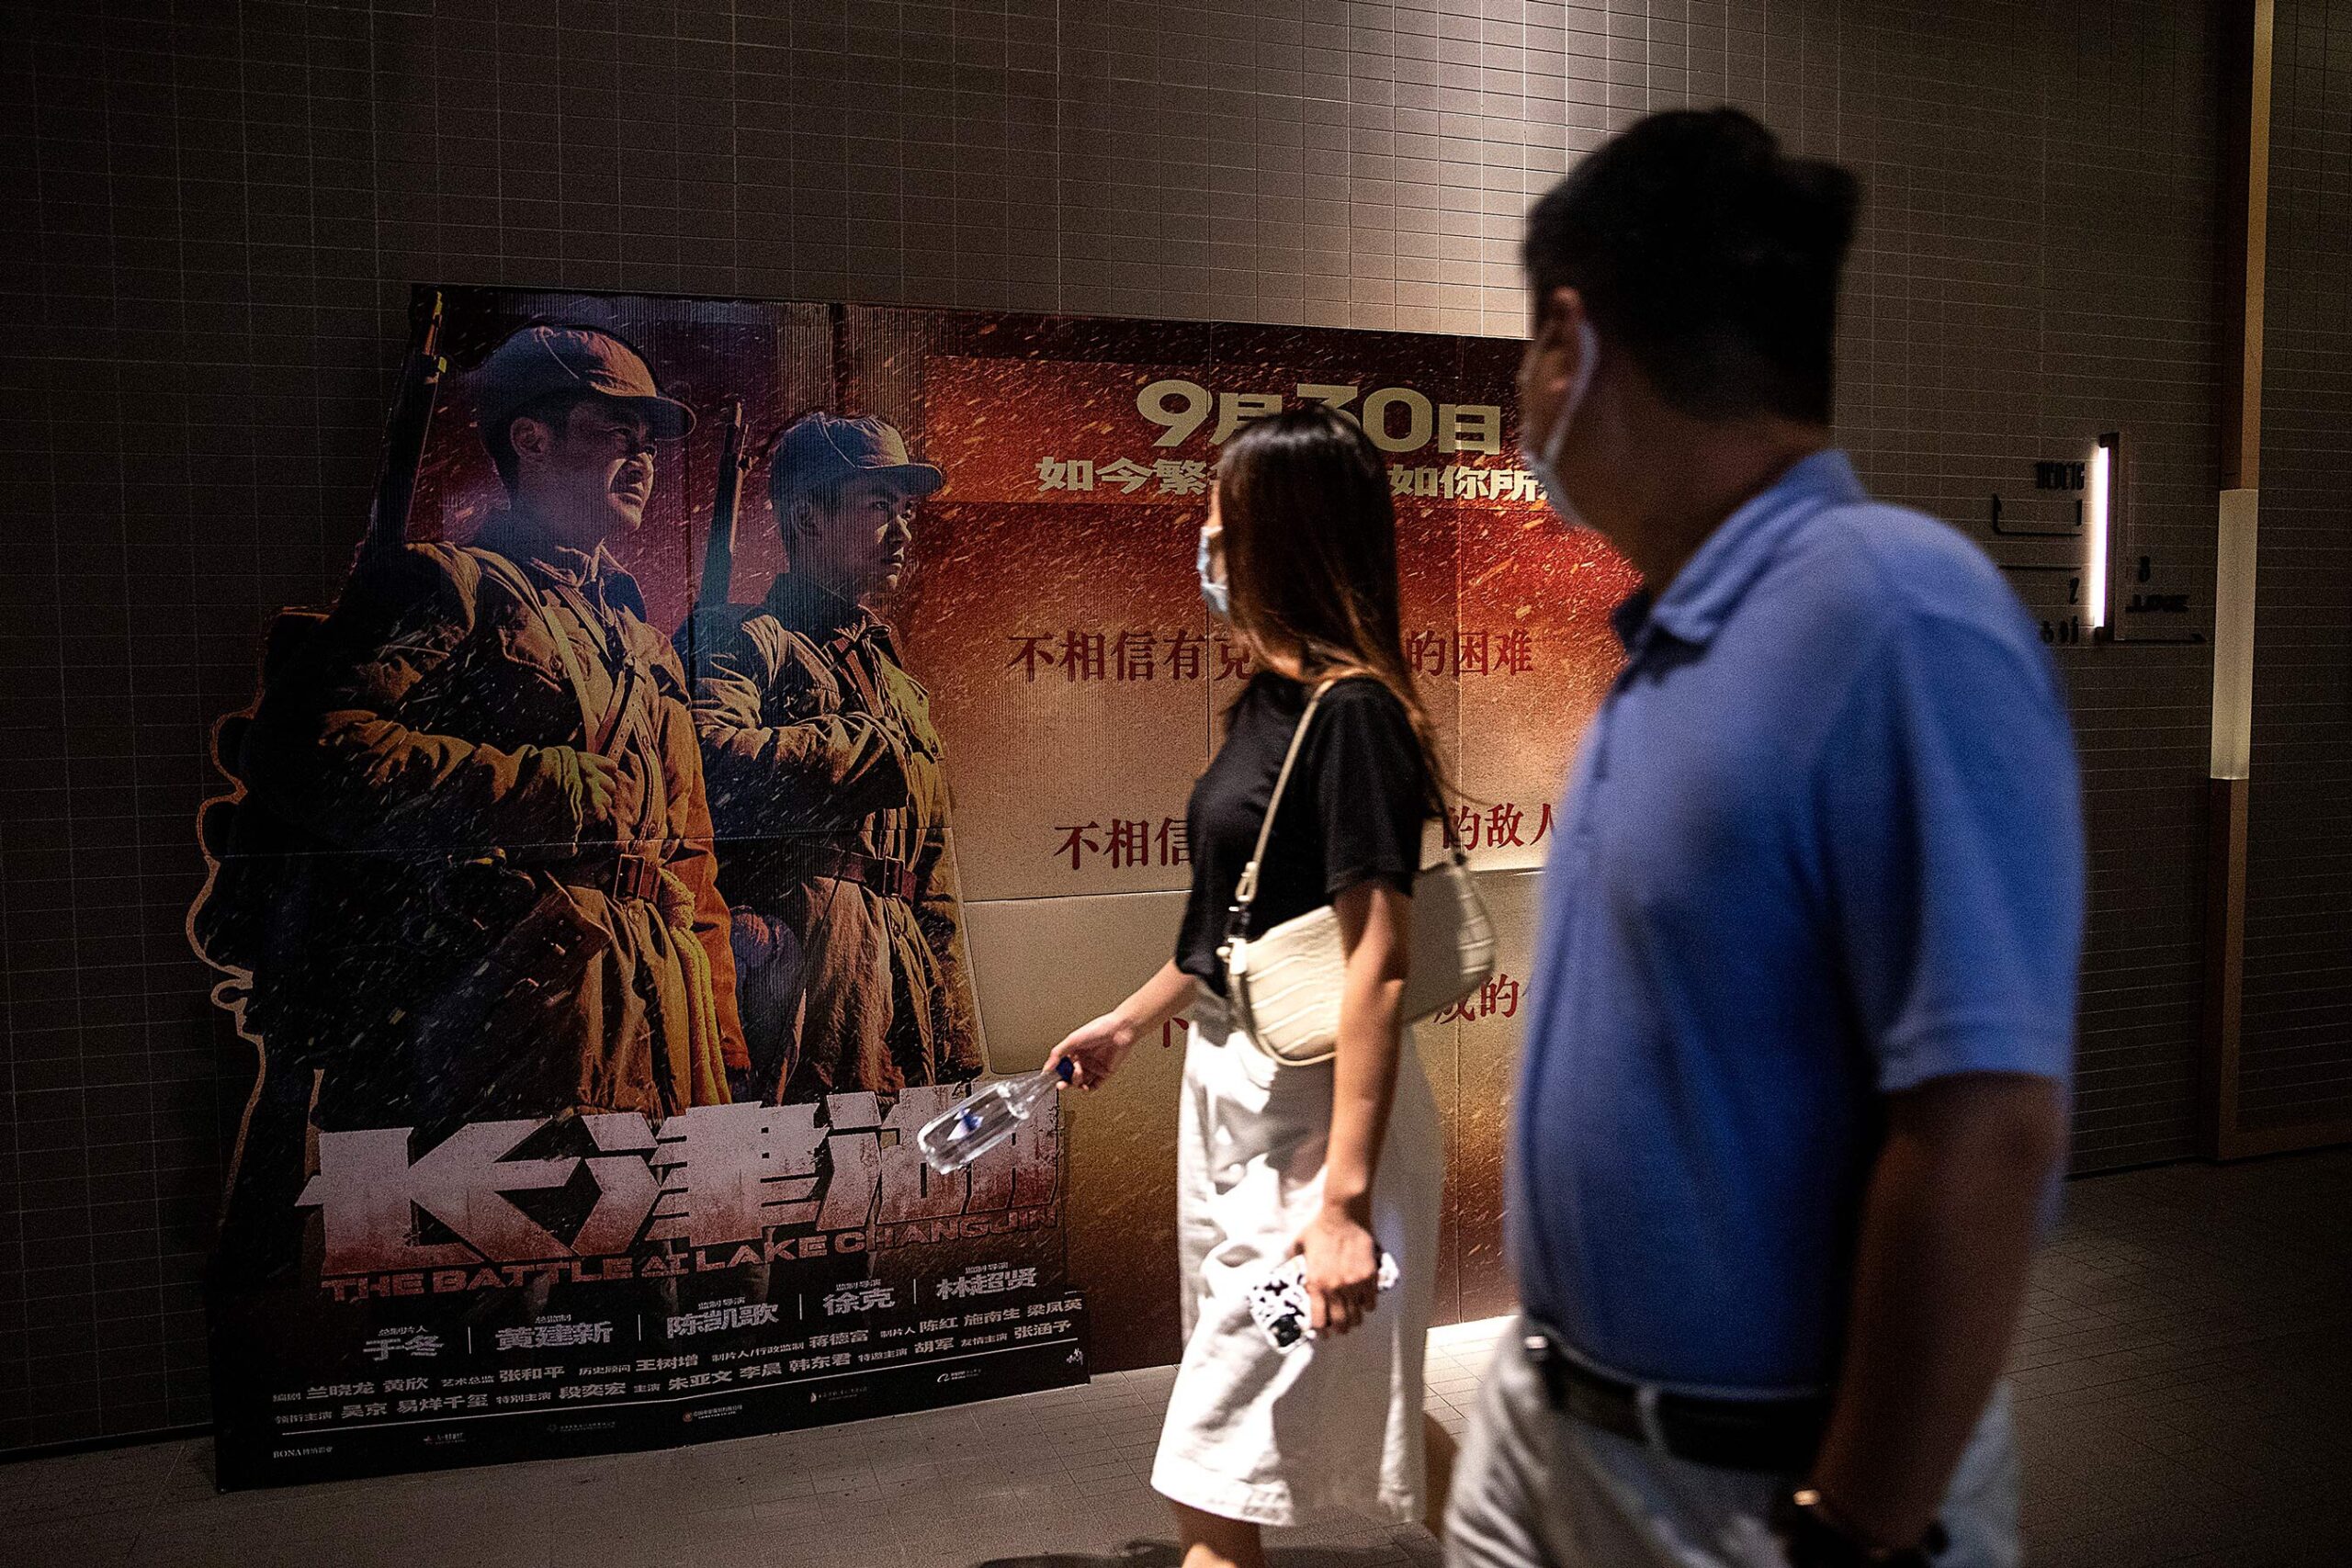 中国电影的变革时代：只记得大片，短视频让影院变尴尬